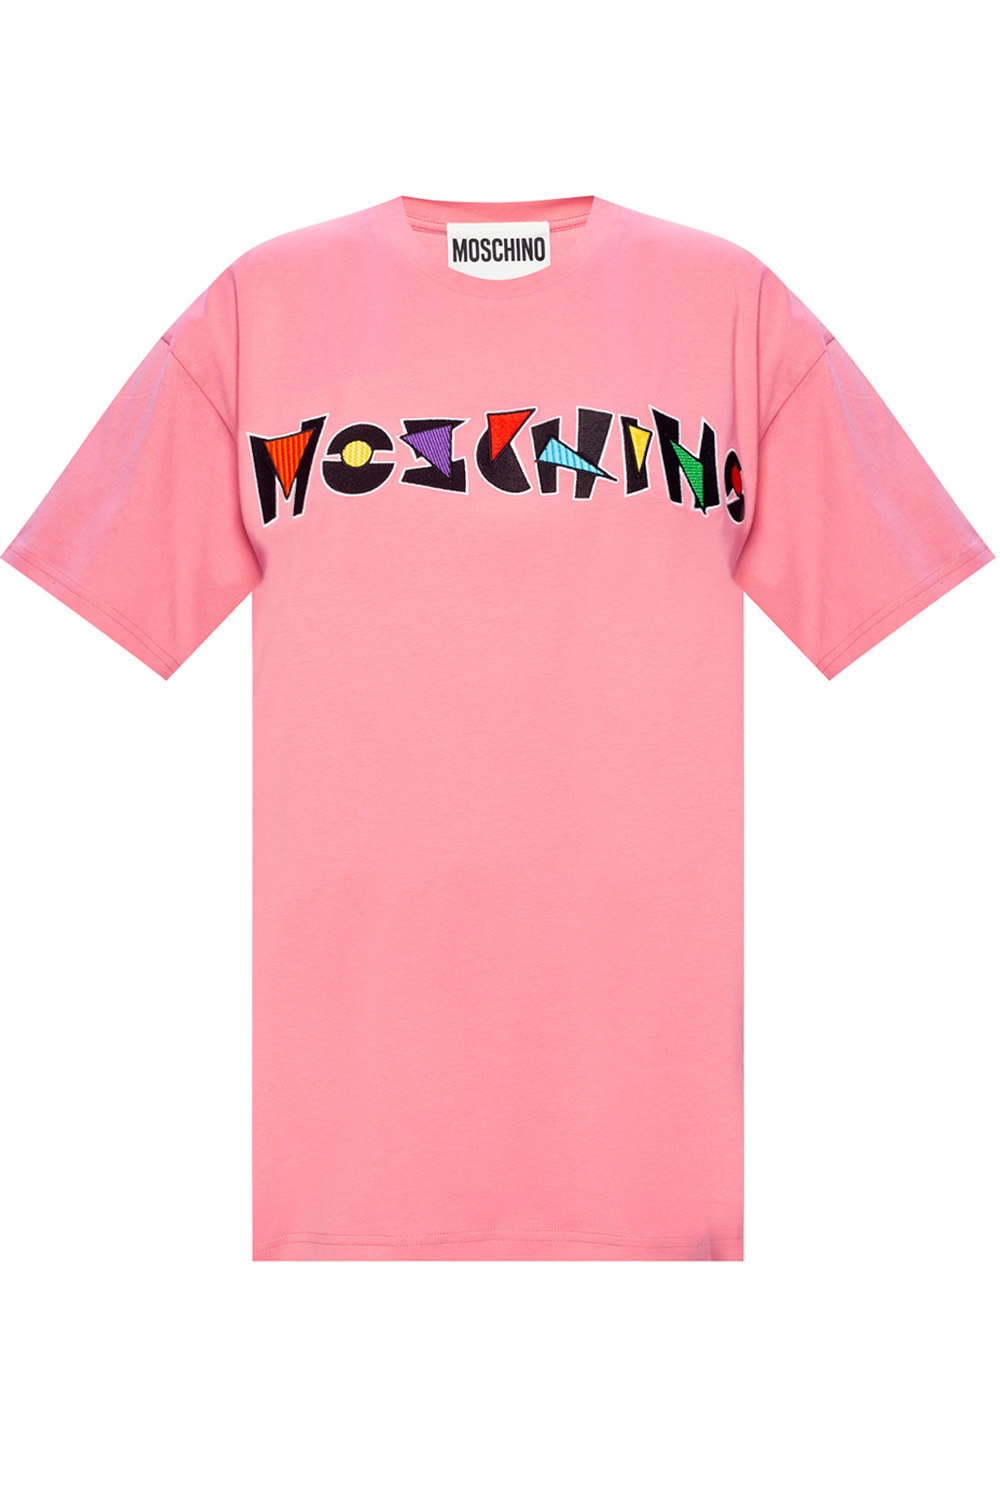 moschino oversized t shirt size chart